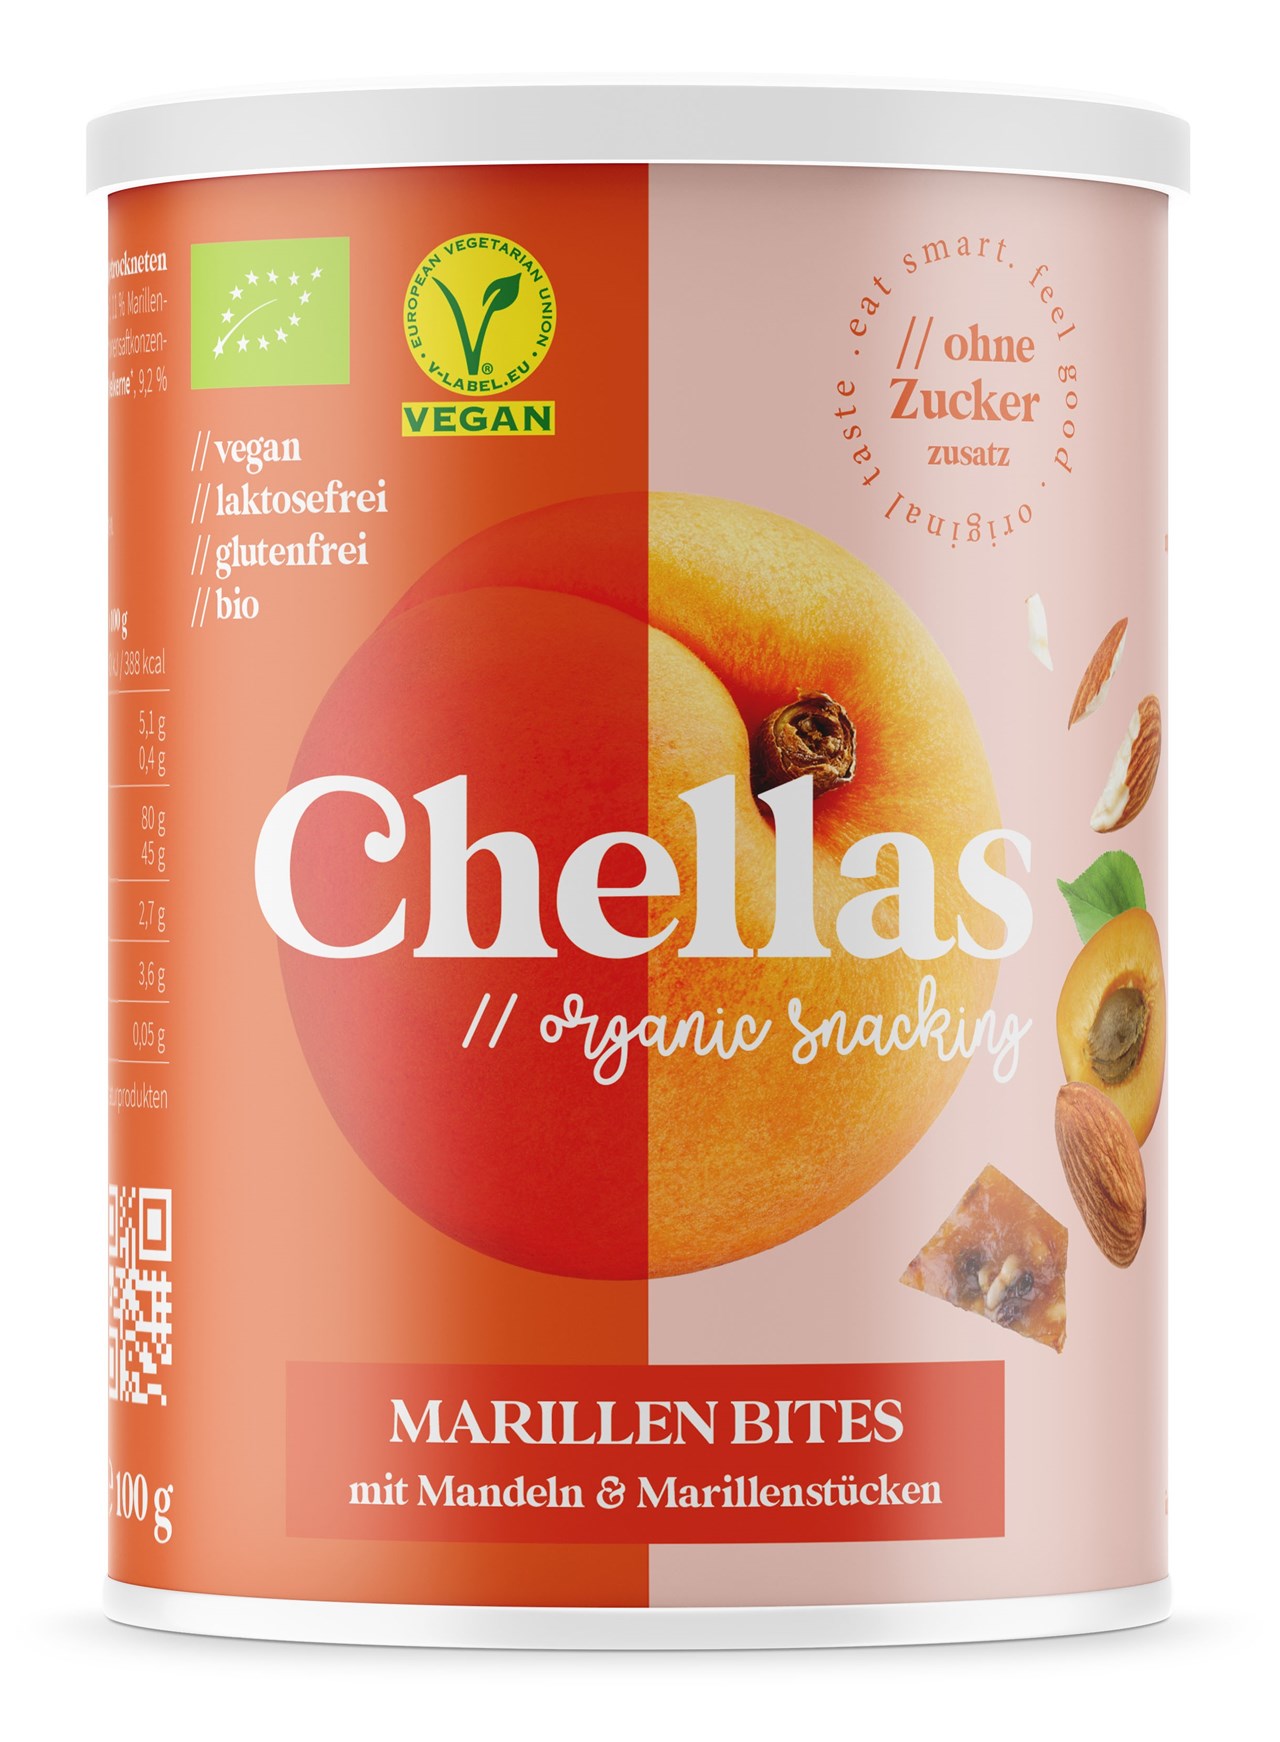 CHELLAS // organic snacking (MAIAS OG) Produkt-Beispiele CHELLAS // organic sancking MARILLEN BITES mit Mandeln & Marillenstücken